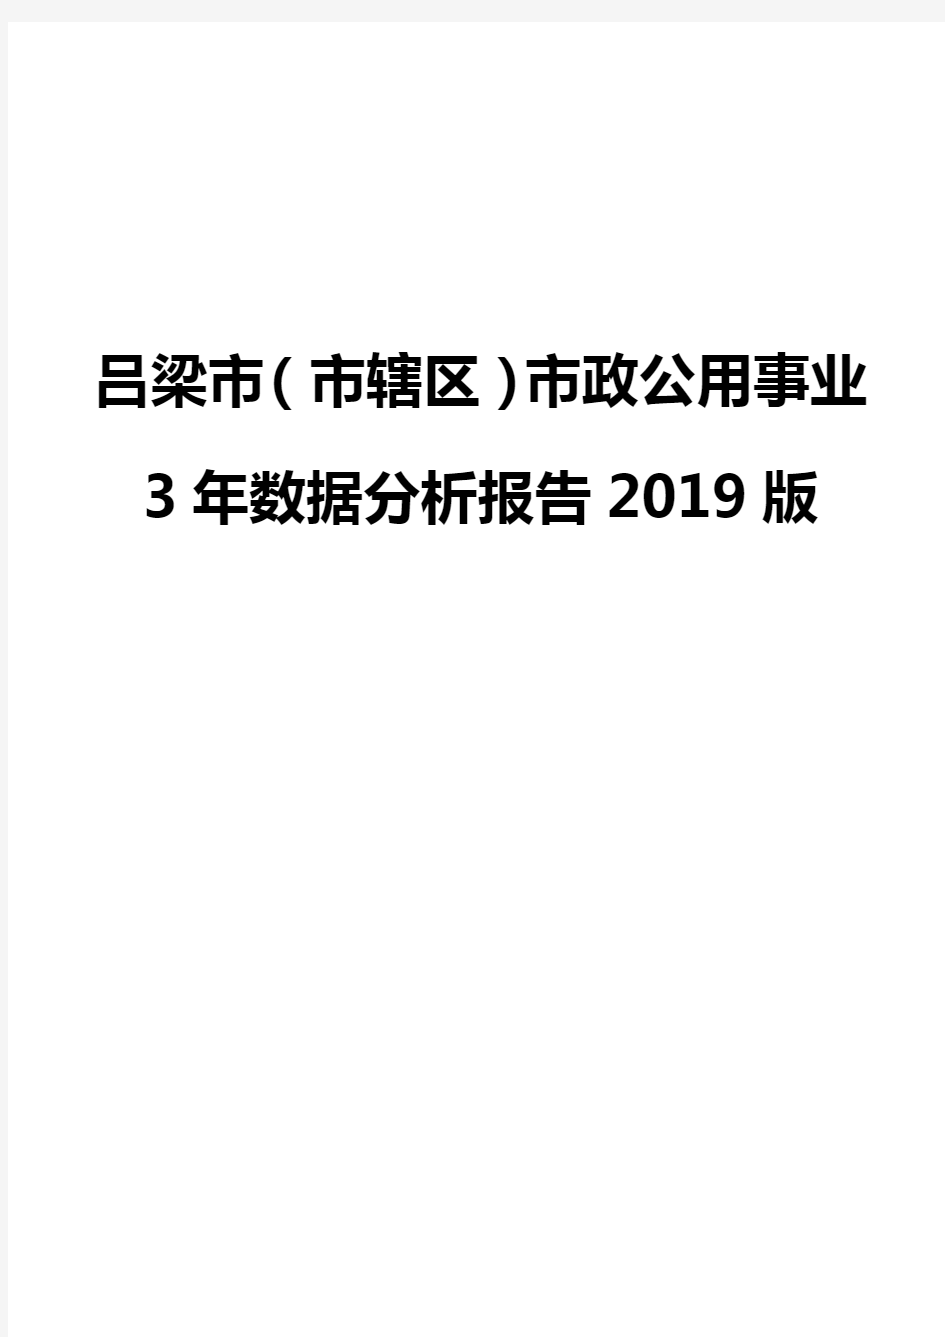 吕梁市(市辖区)市政公用事业3年数据分析报告2019版